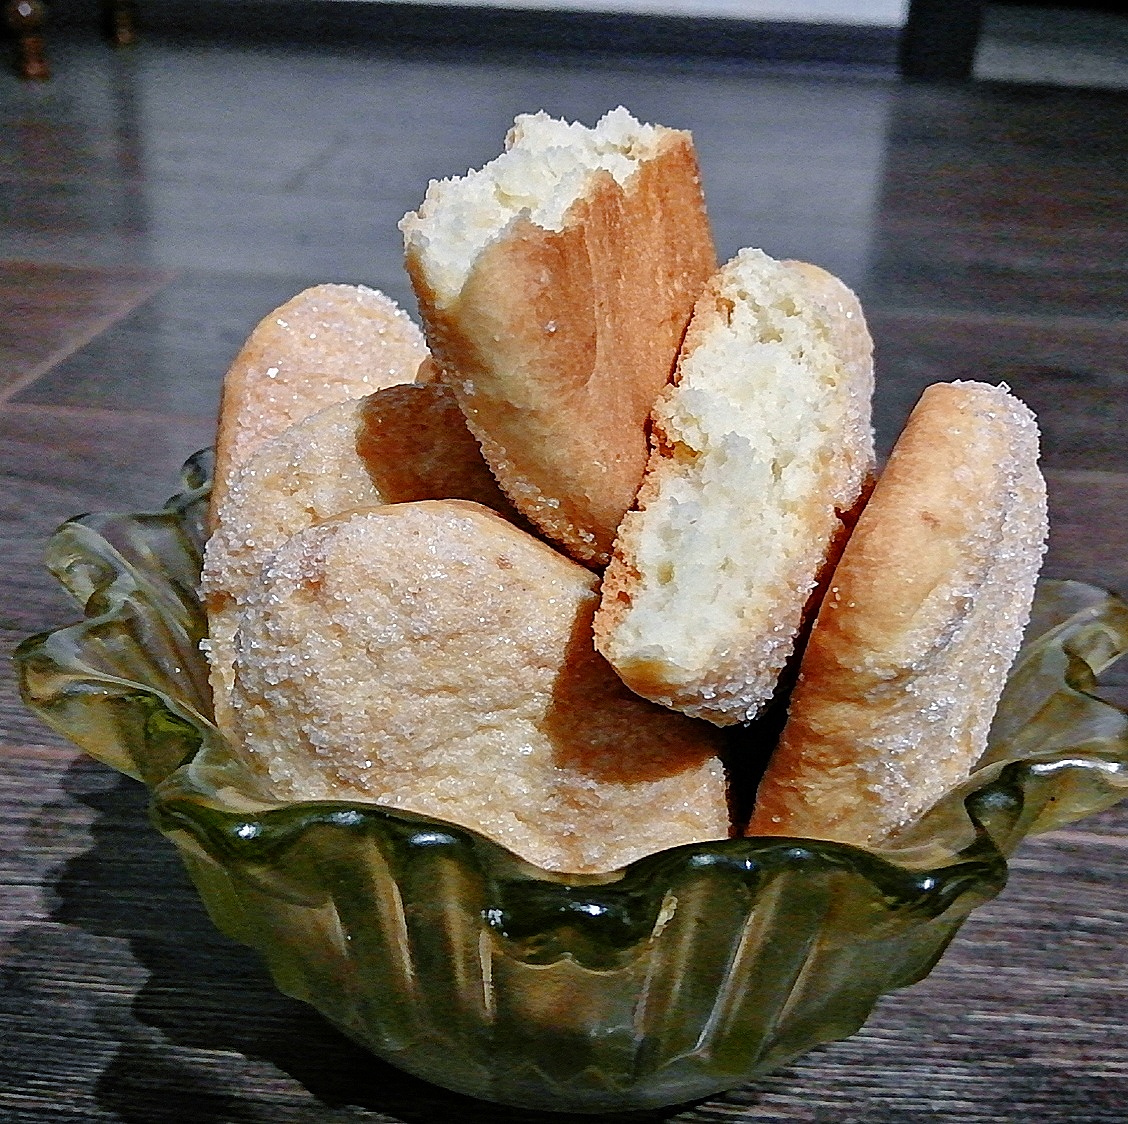 Вкусное домашнее печенье из творога со сметаной - рецепт с фото на centerforstrategy.ru